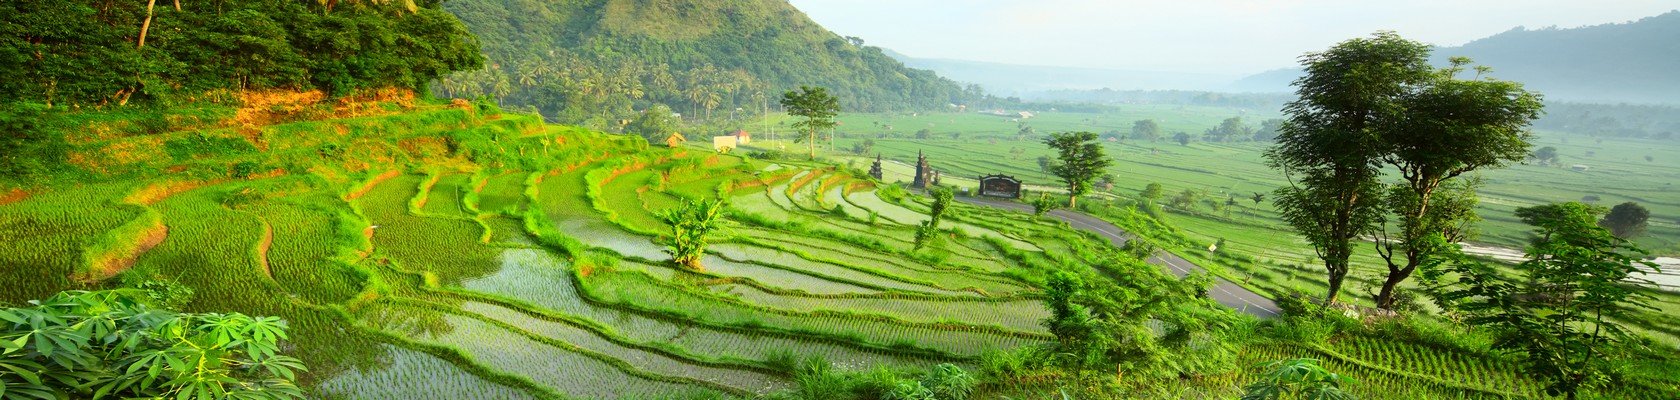 Prachtige treinreis door de rijstvelden